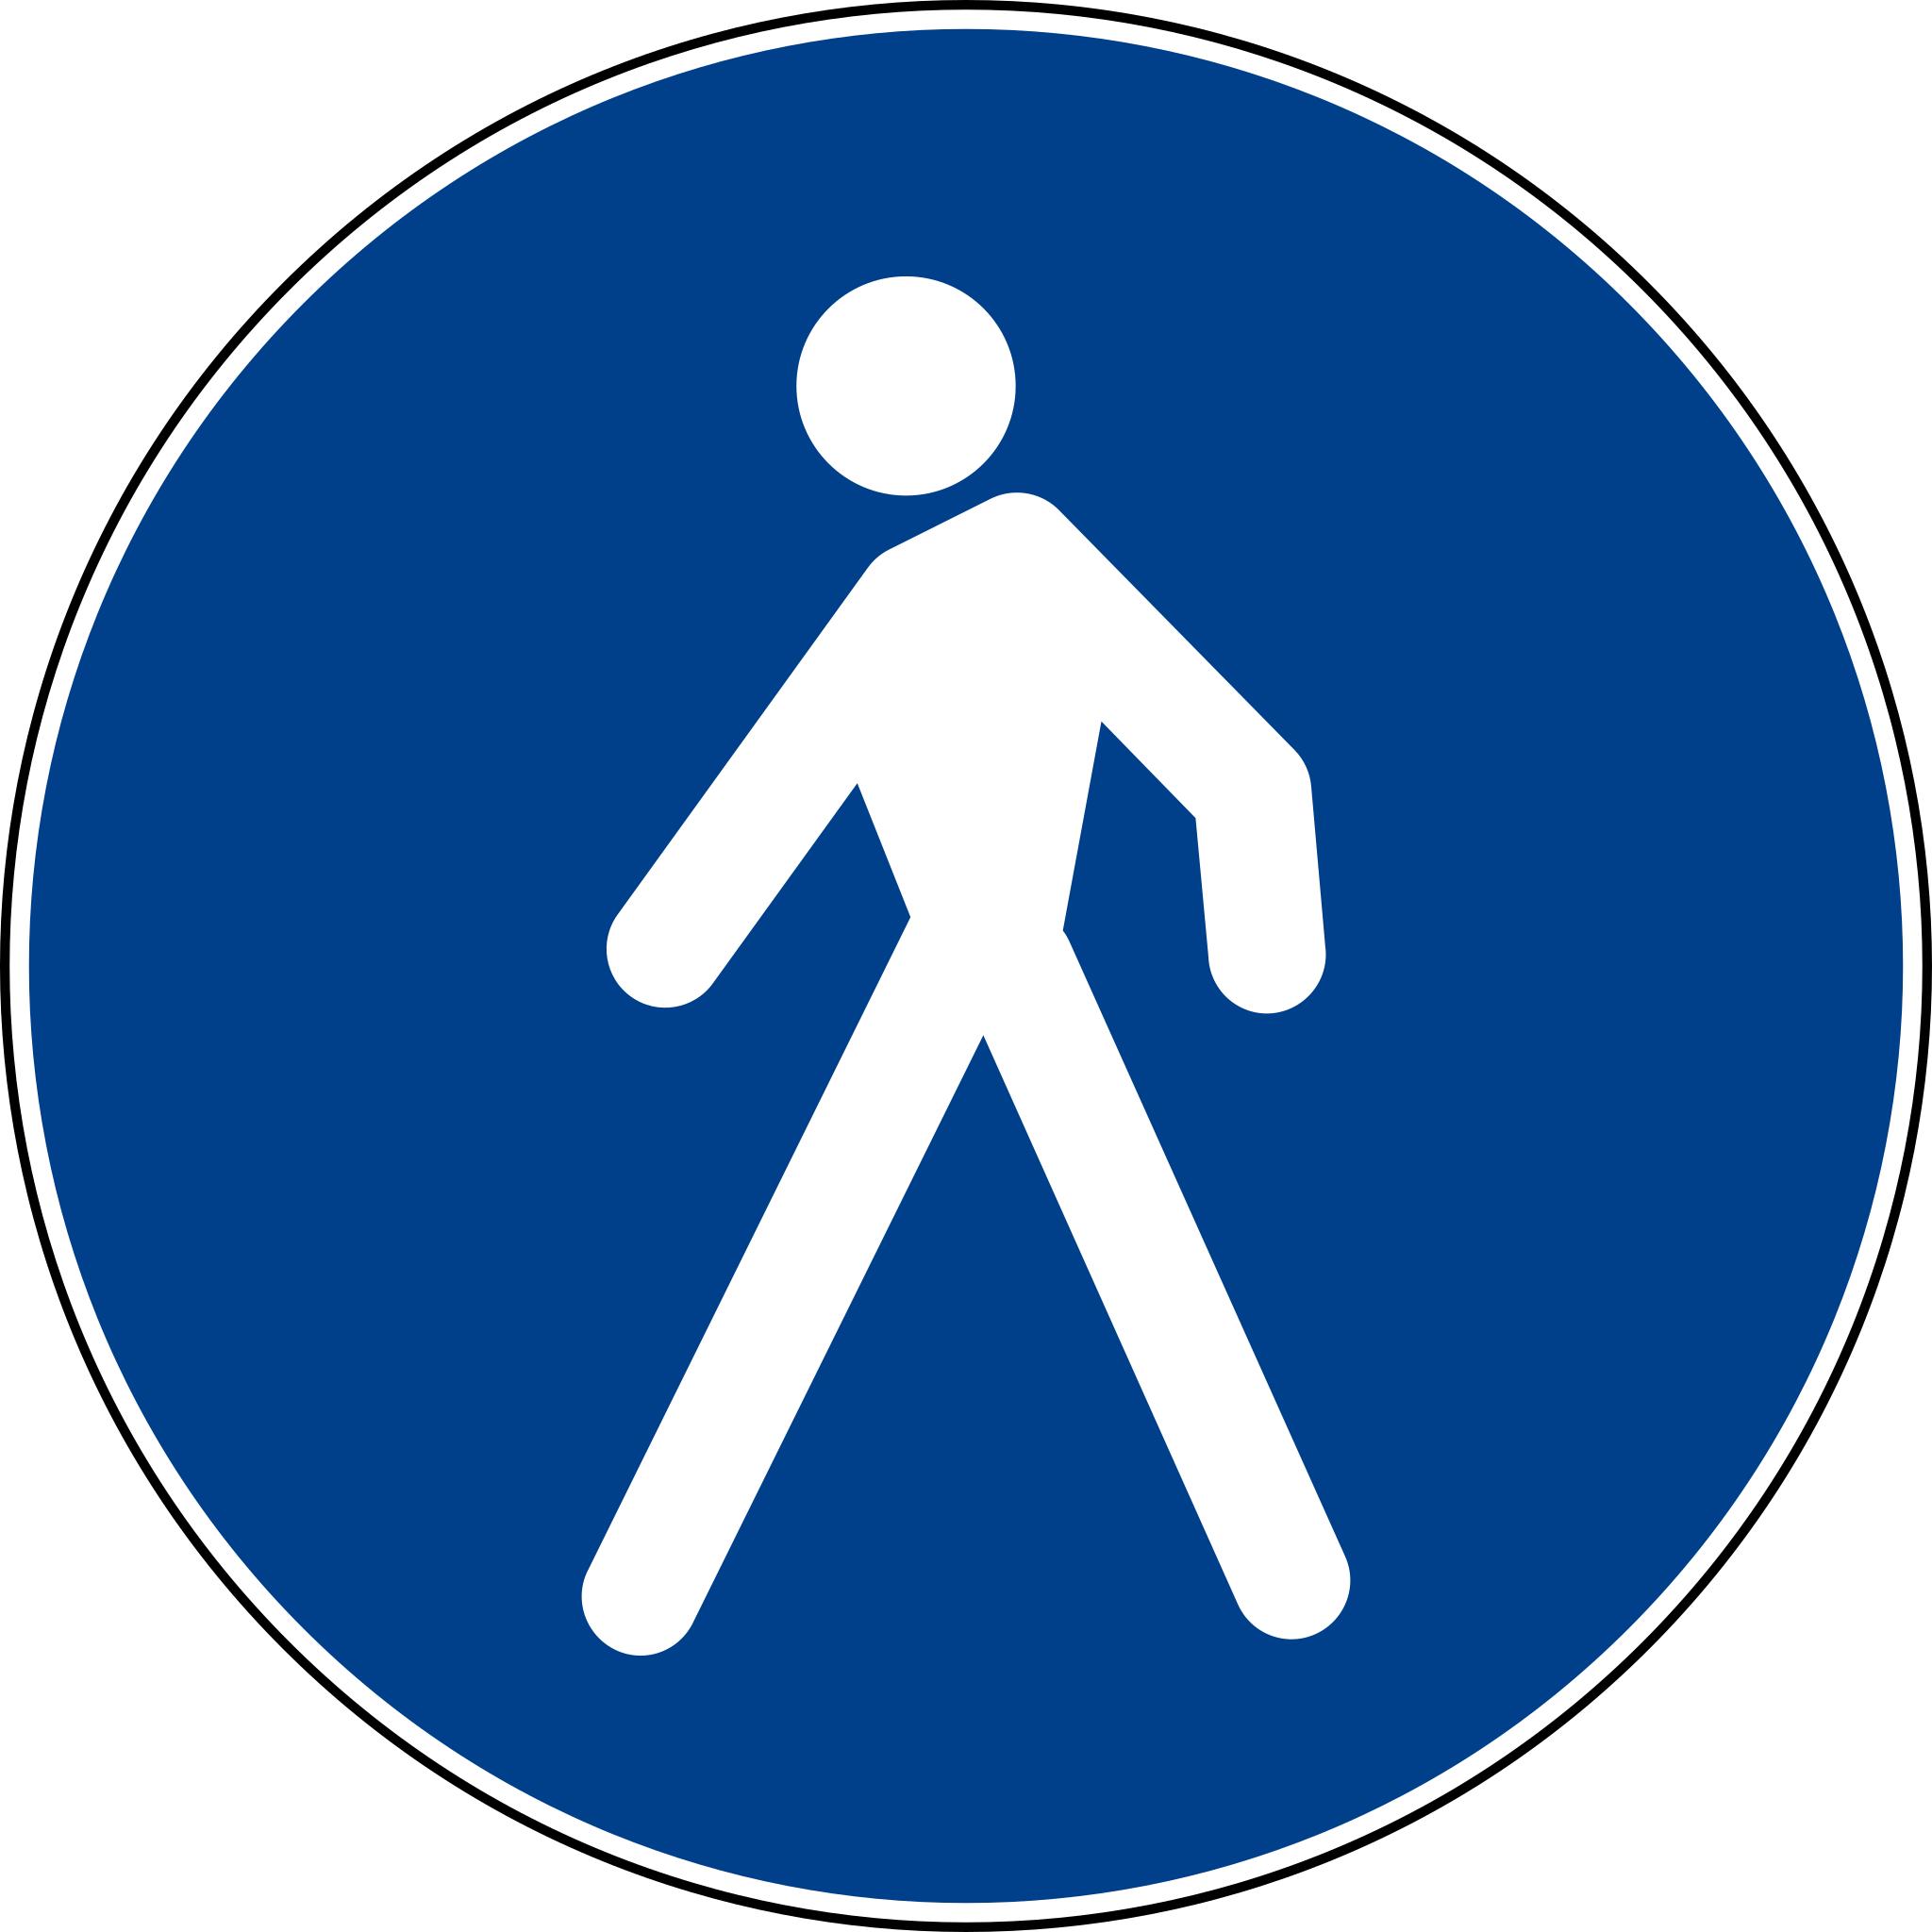 знаки для пешеходов картинки и их